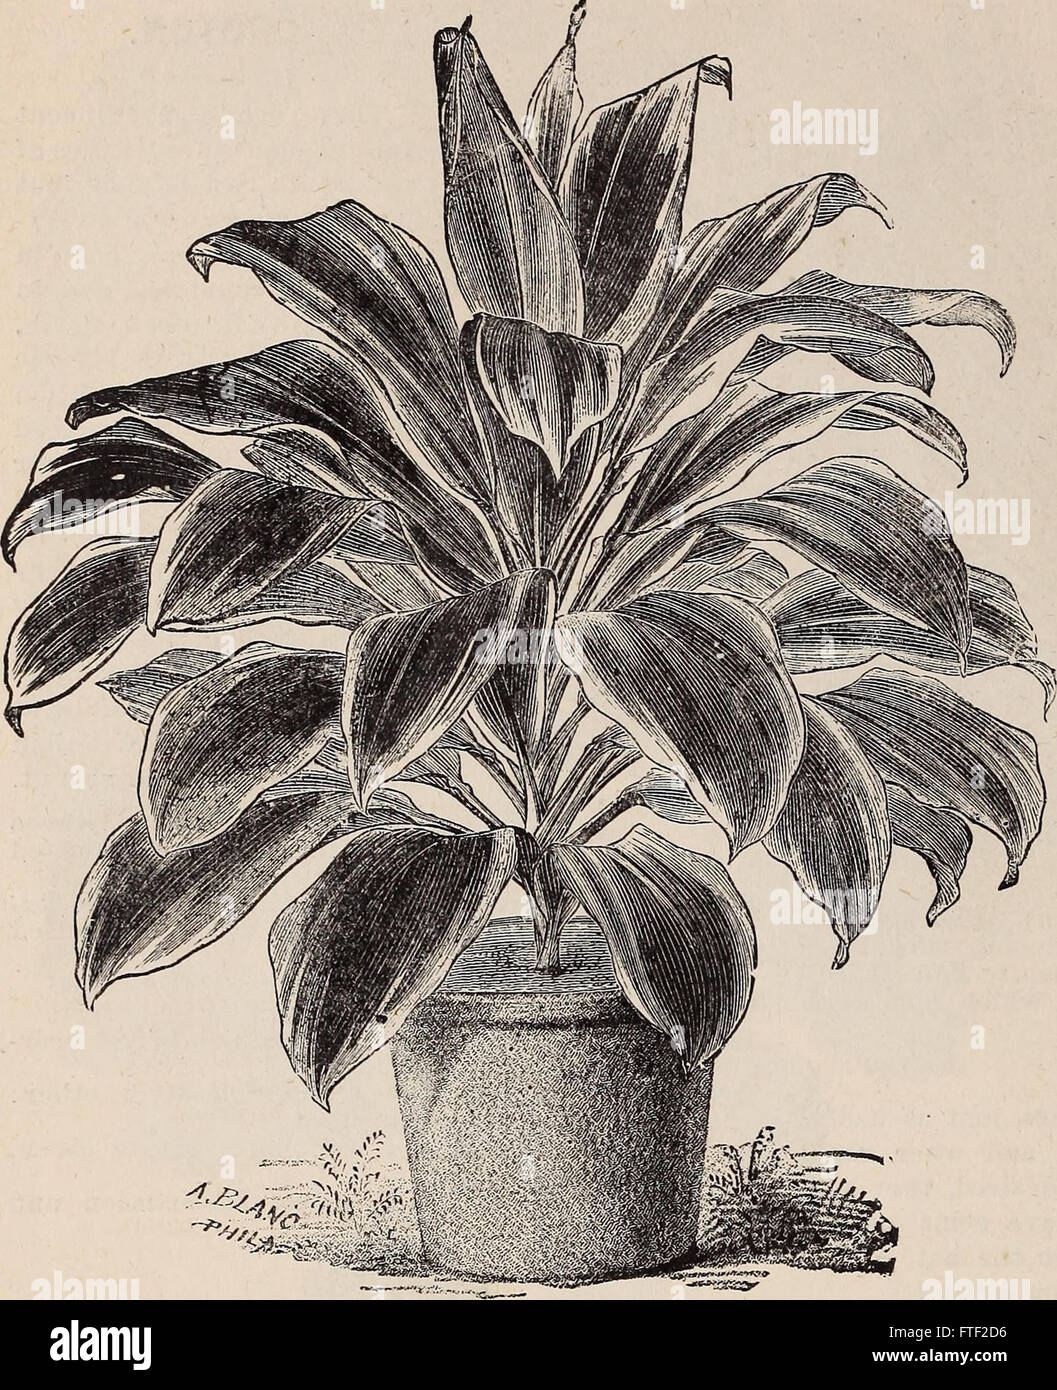 Catalogue descriptif et illustré annuel de nouvelles, rares et belles plantes (1892) Banque D'Images